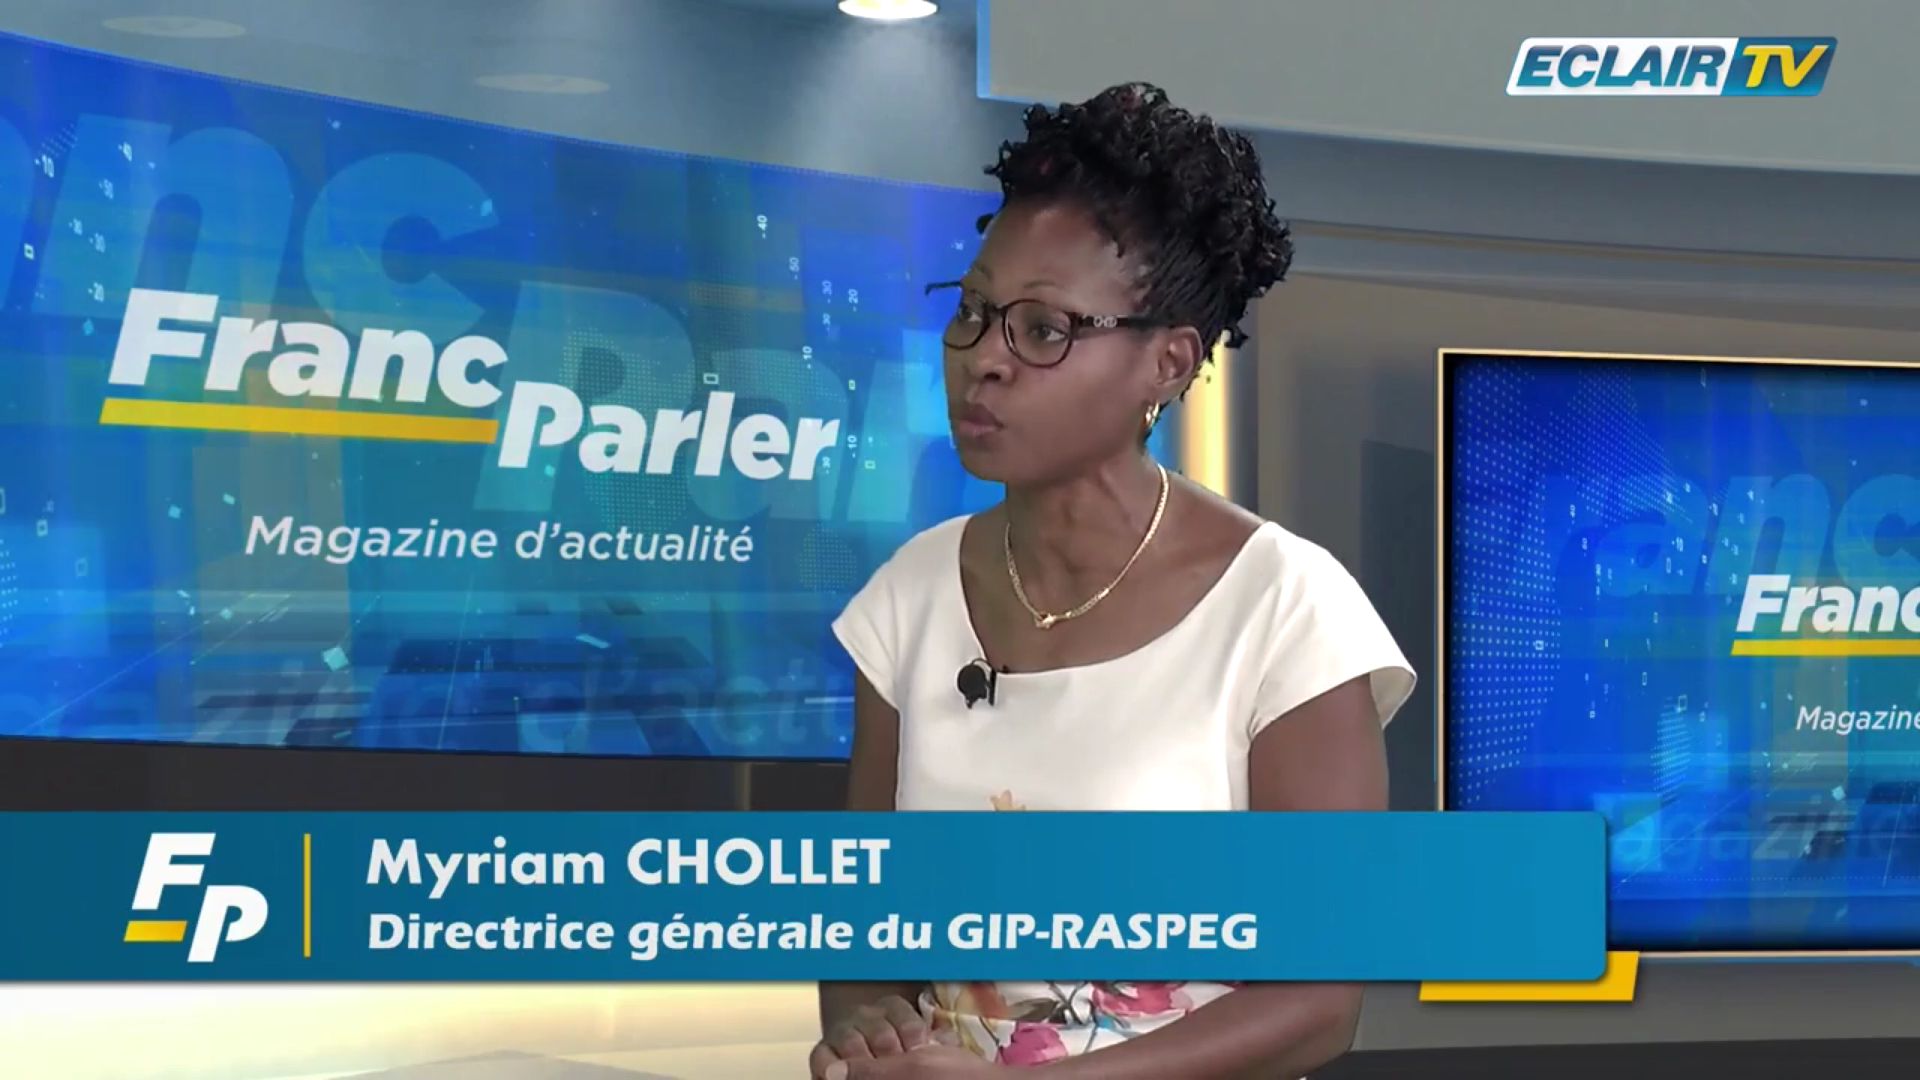 [Vidéo] Onews Guadeloupe. Myriam CHOLLET. Invité de Franc Parler(ECLAIR TV)